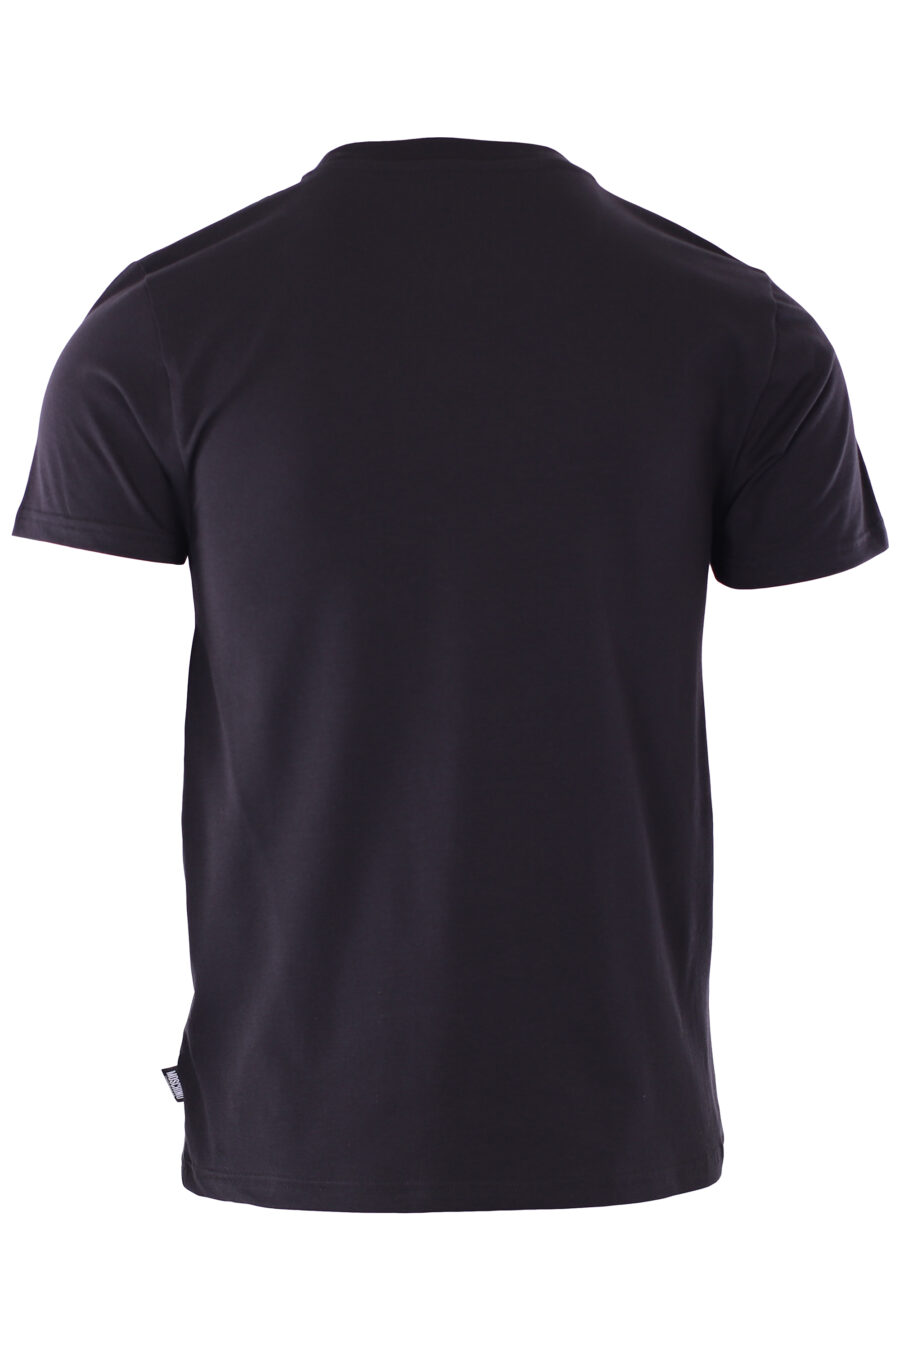 Schwarzes schmal geschnittenes T-Shirt mit Bären-Minilogo "underbear" - IMG 6589